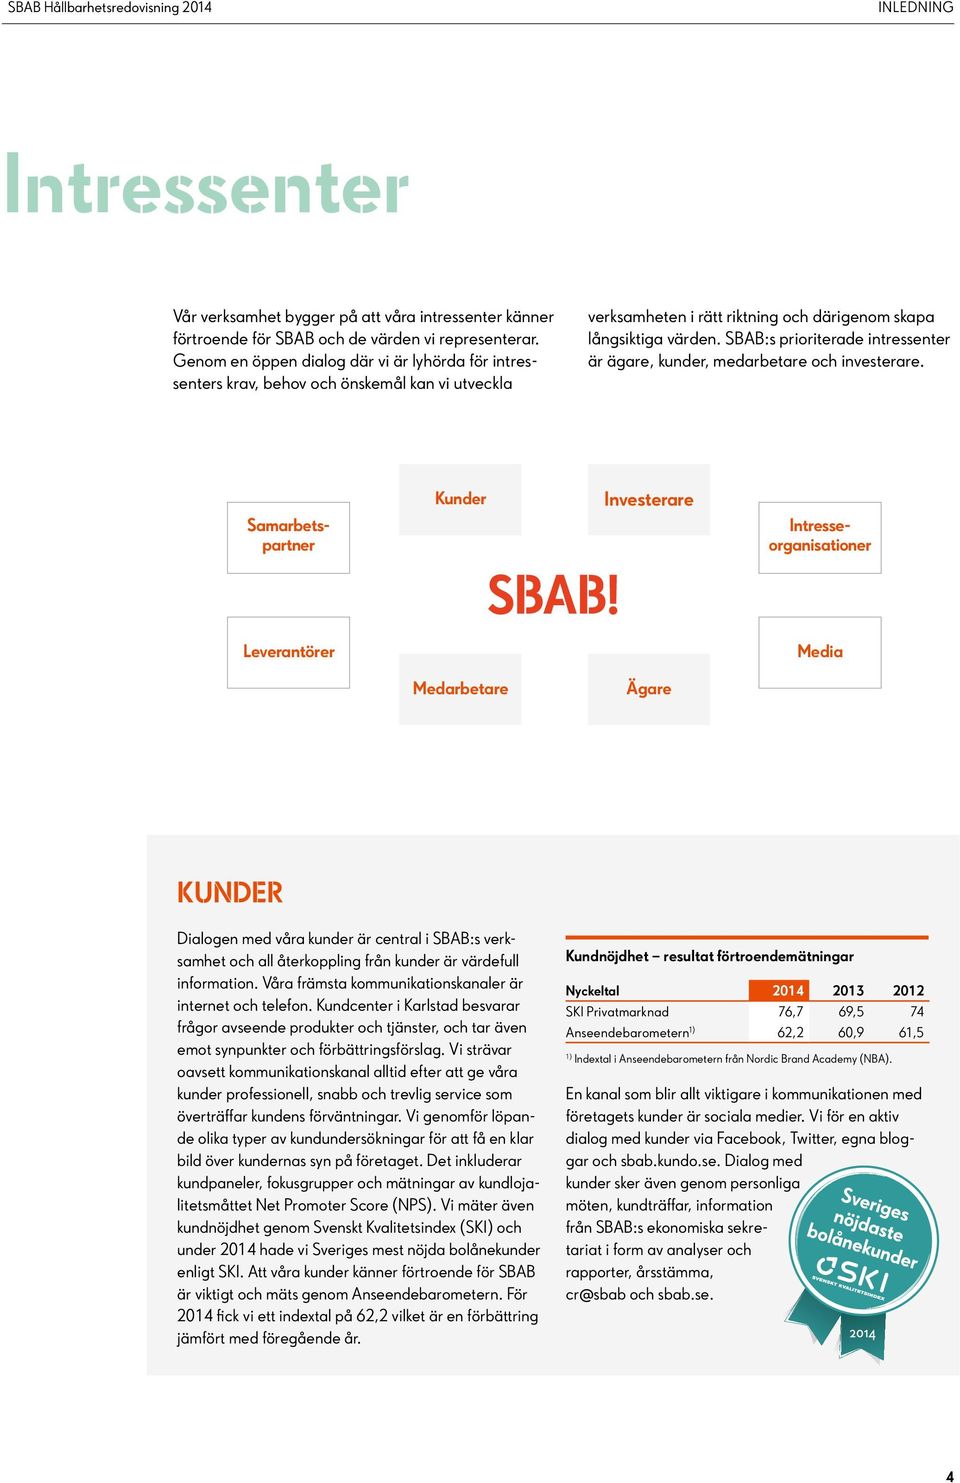 SBAB:s prioriterade intressenter är ägare, kunder, medarbetare och investerare.